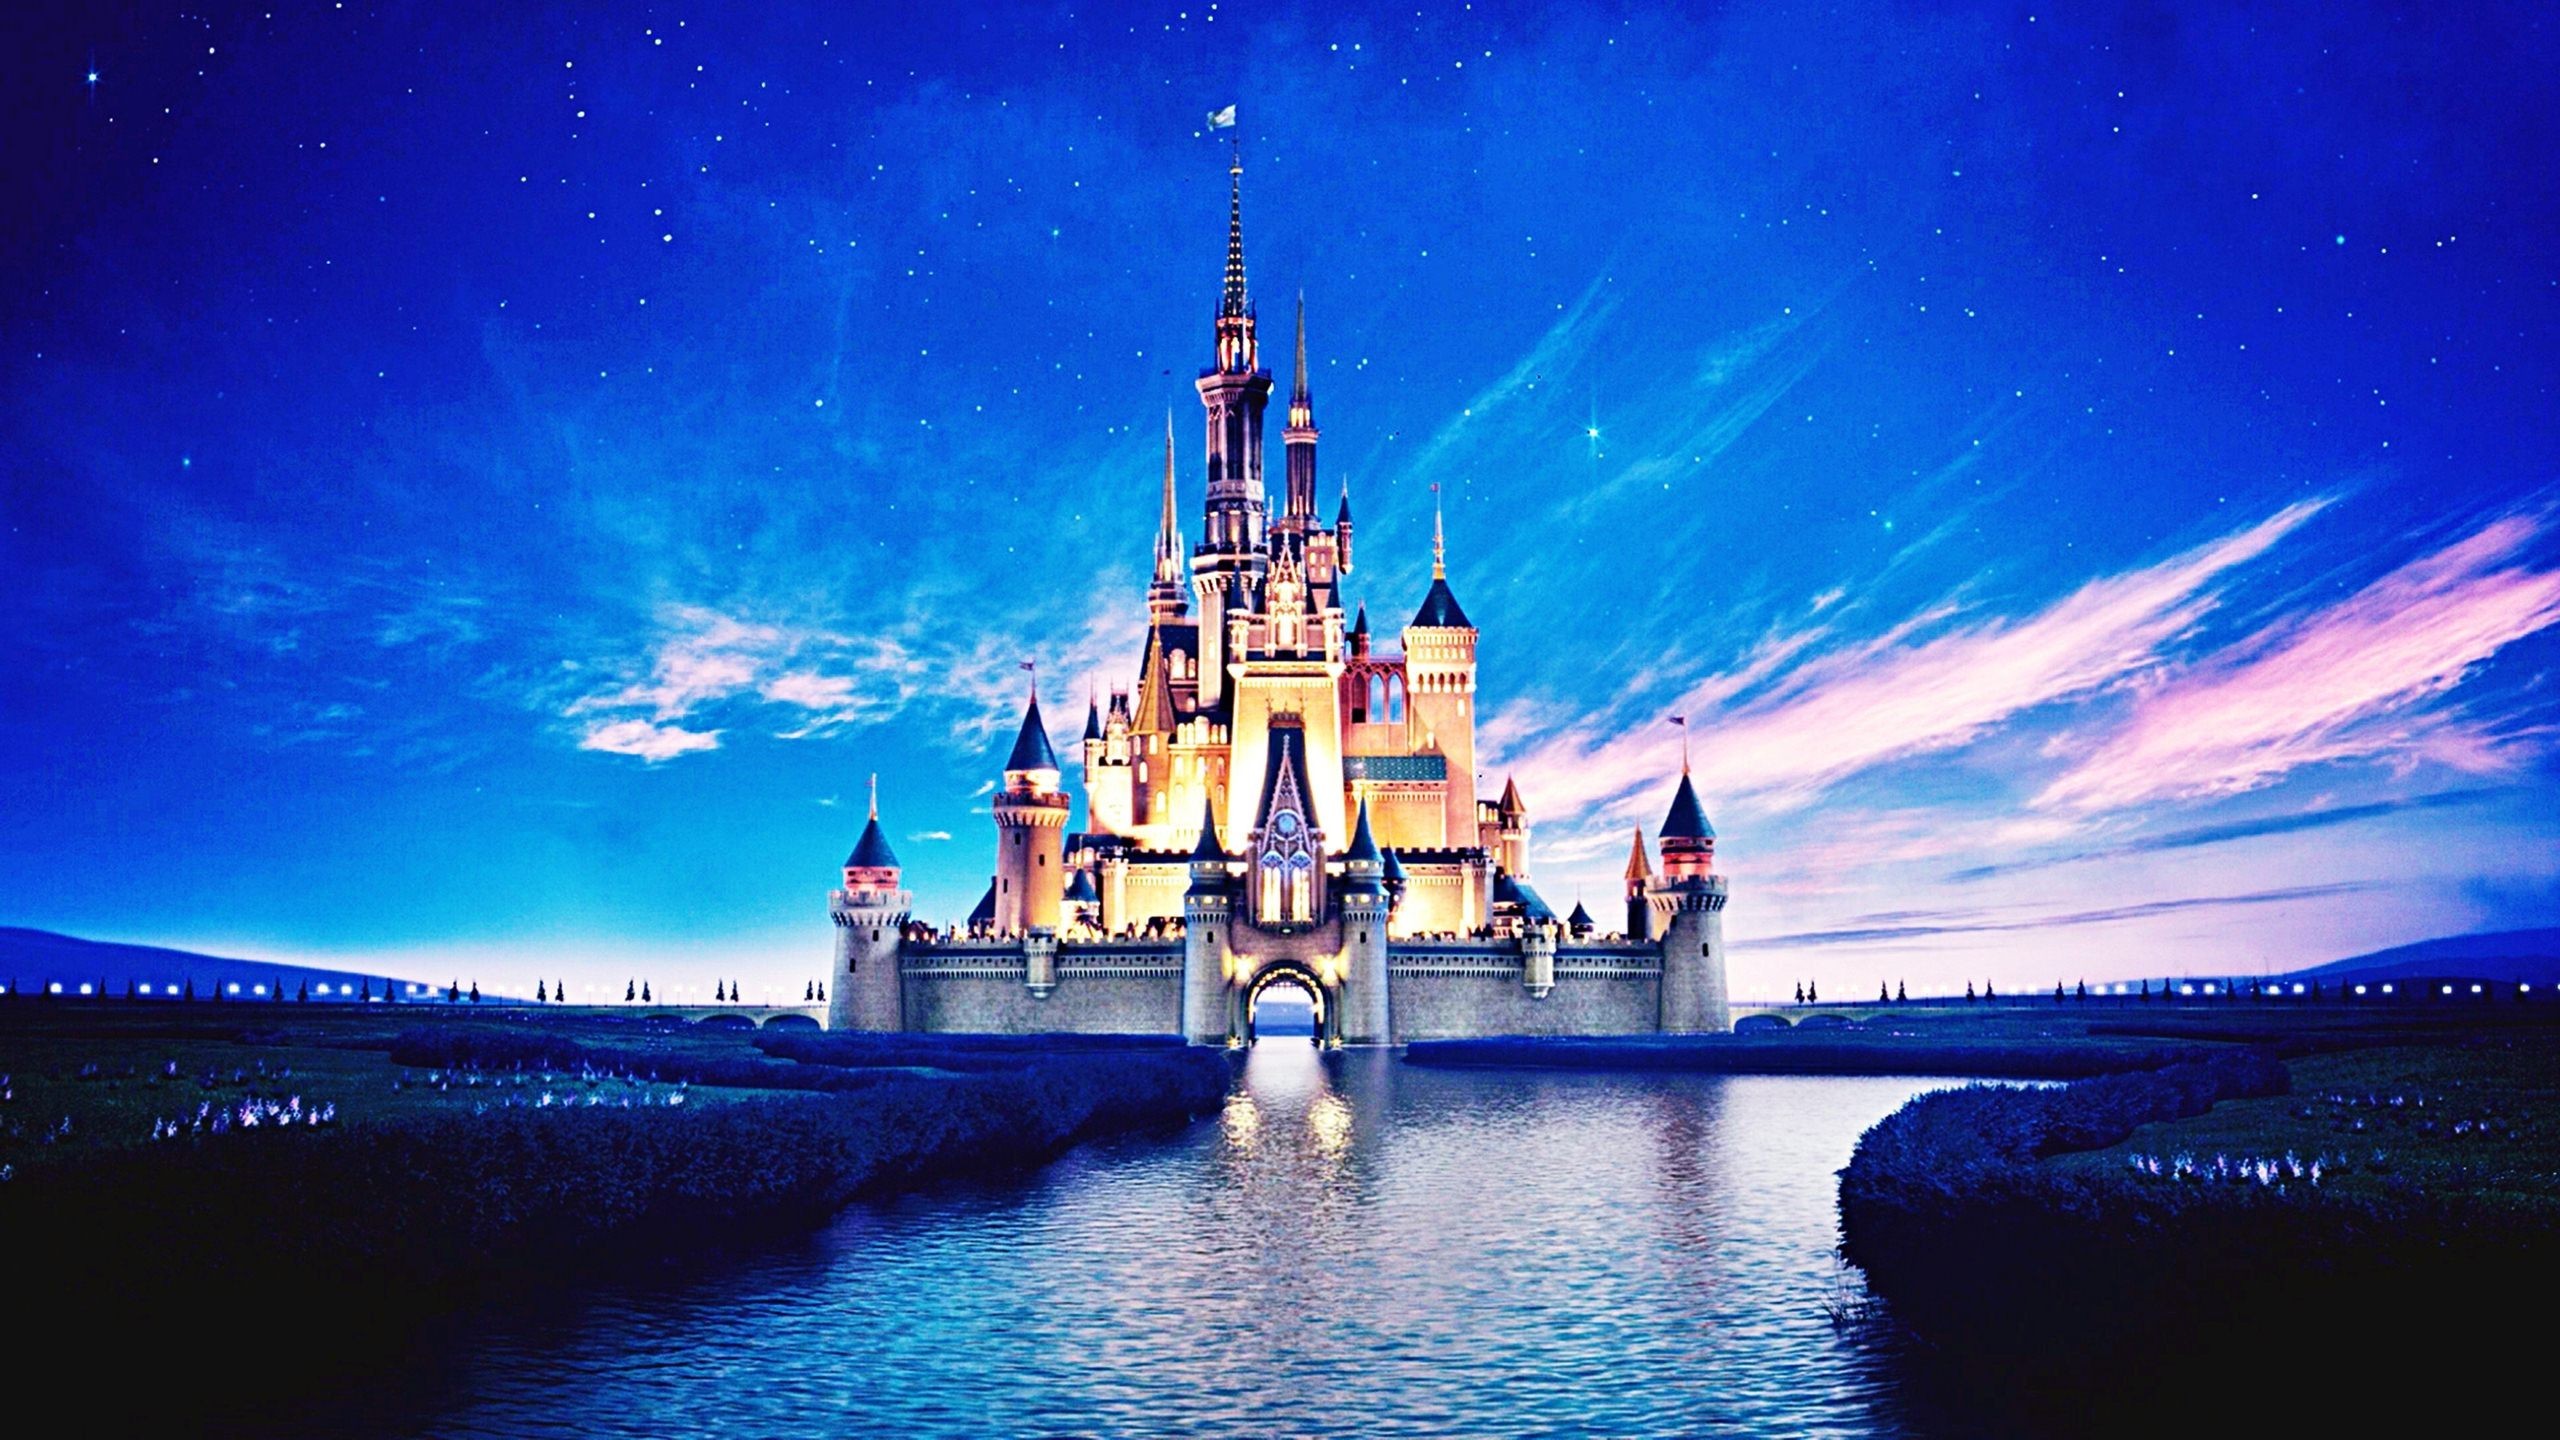 2560x1440 1024x768px #618270 Disney Castle (208.26 KB) | 18.02.2015 | By .